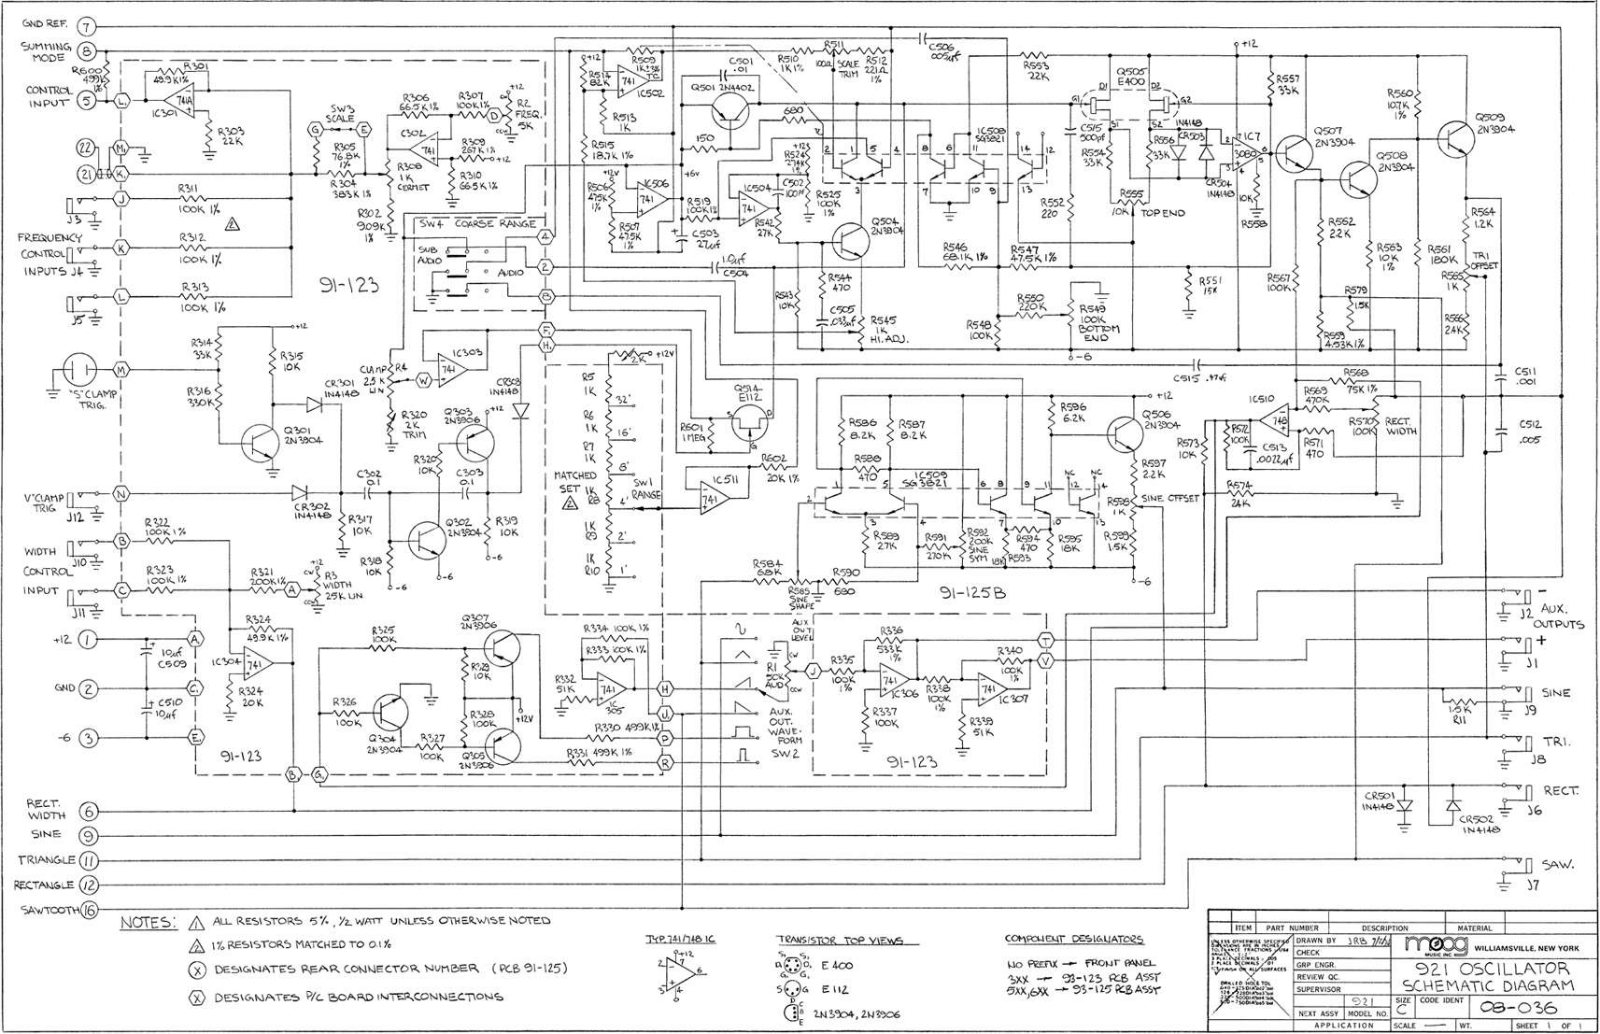 Moog 921 schematic